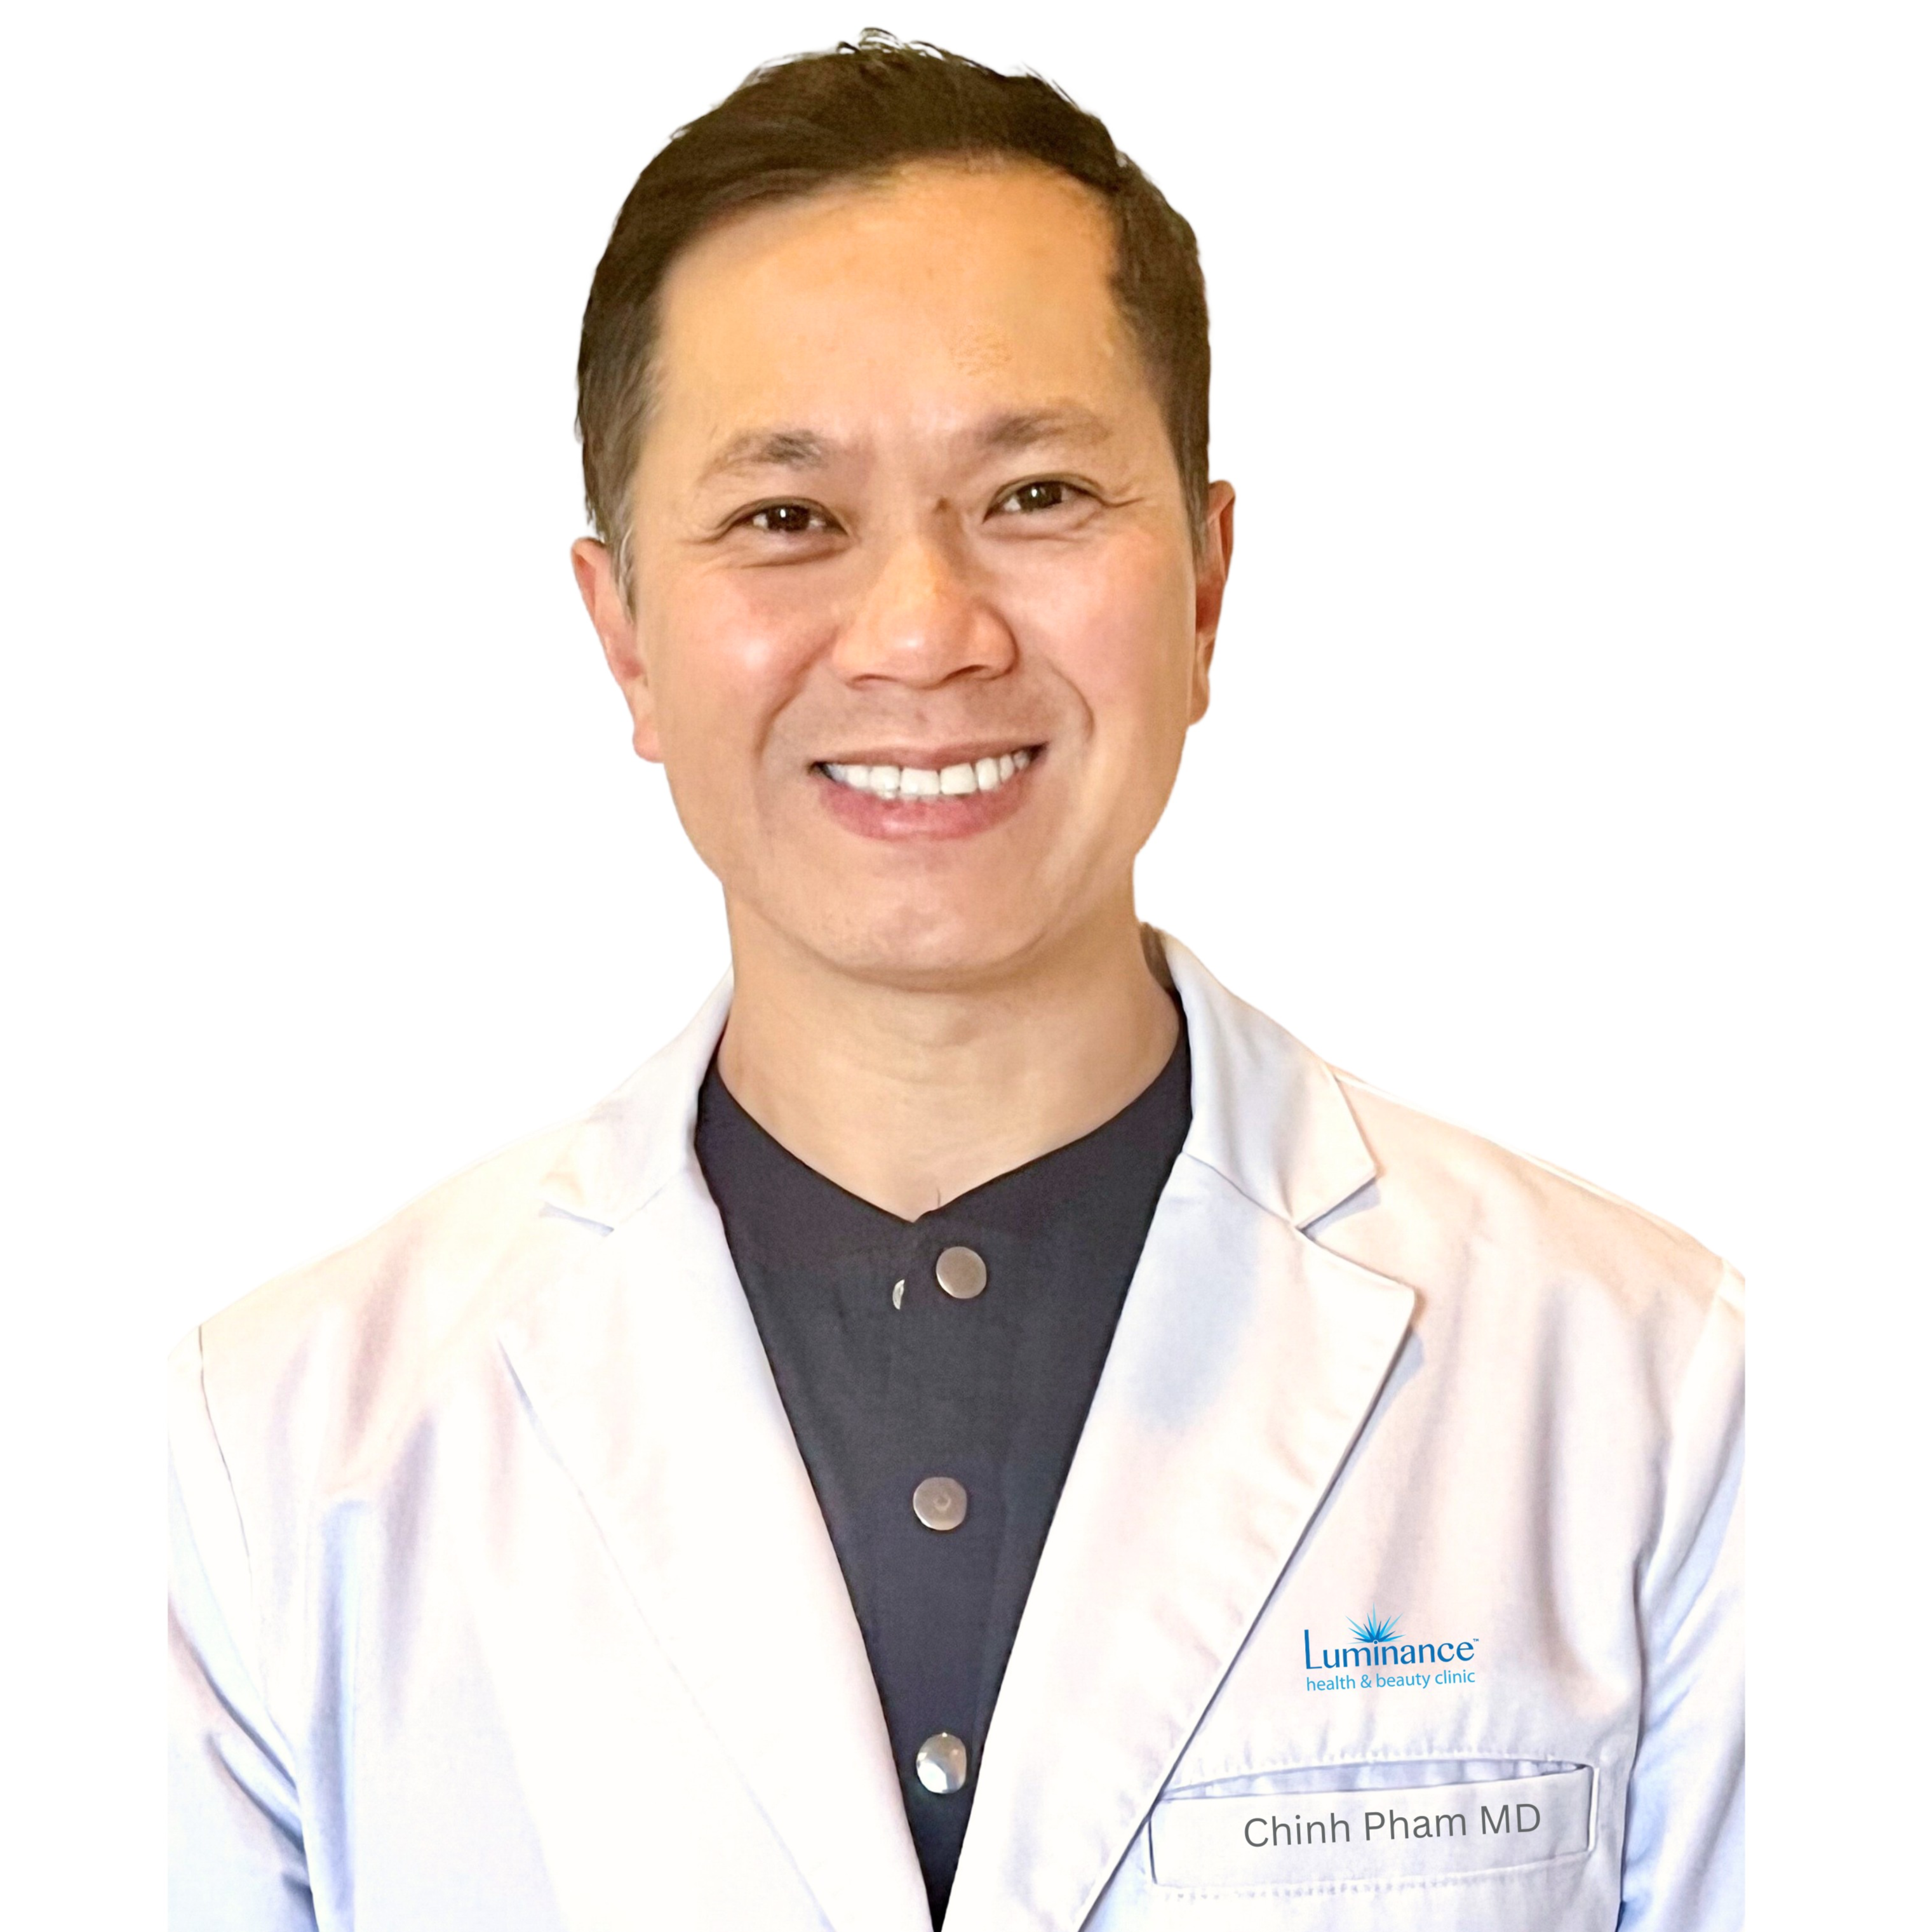 Dr. Chinh PhamMD